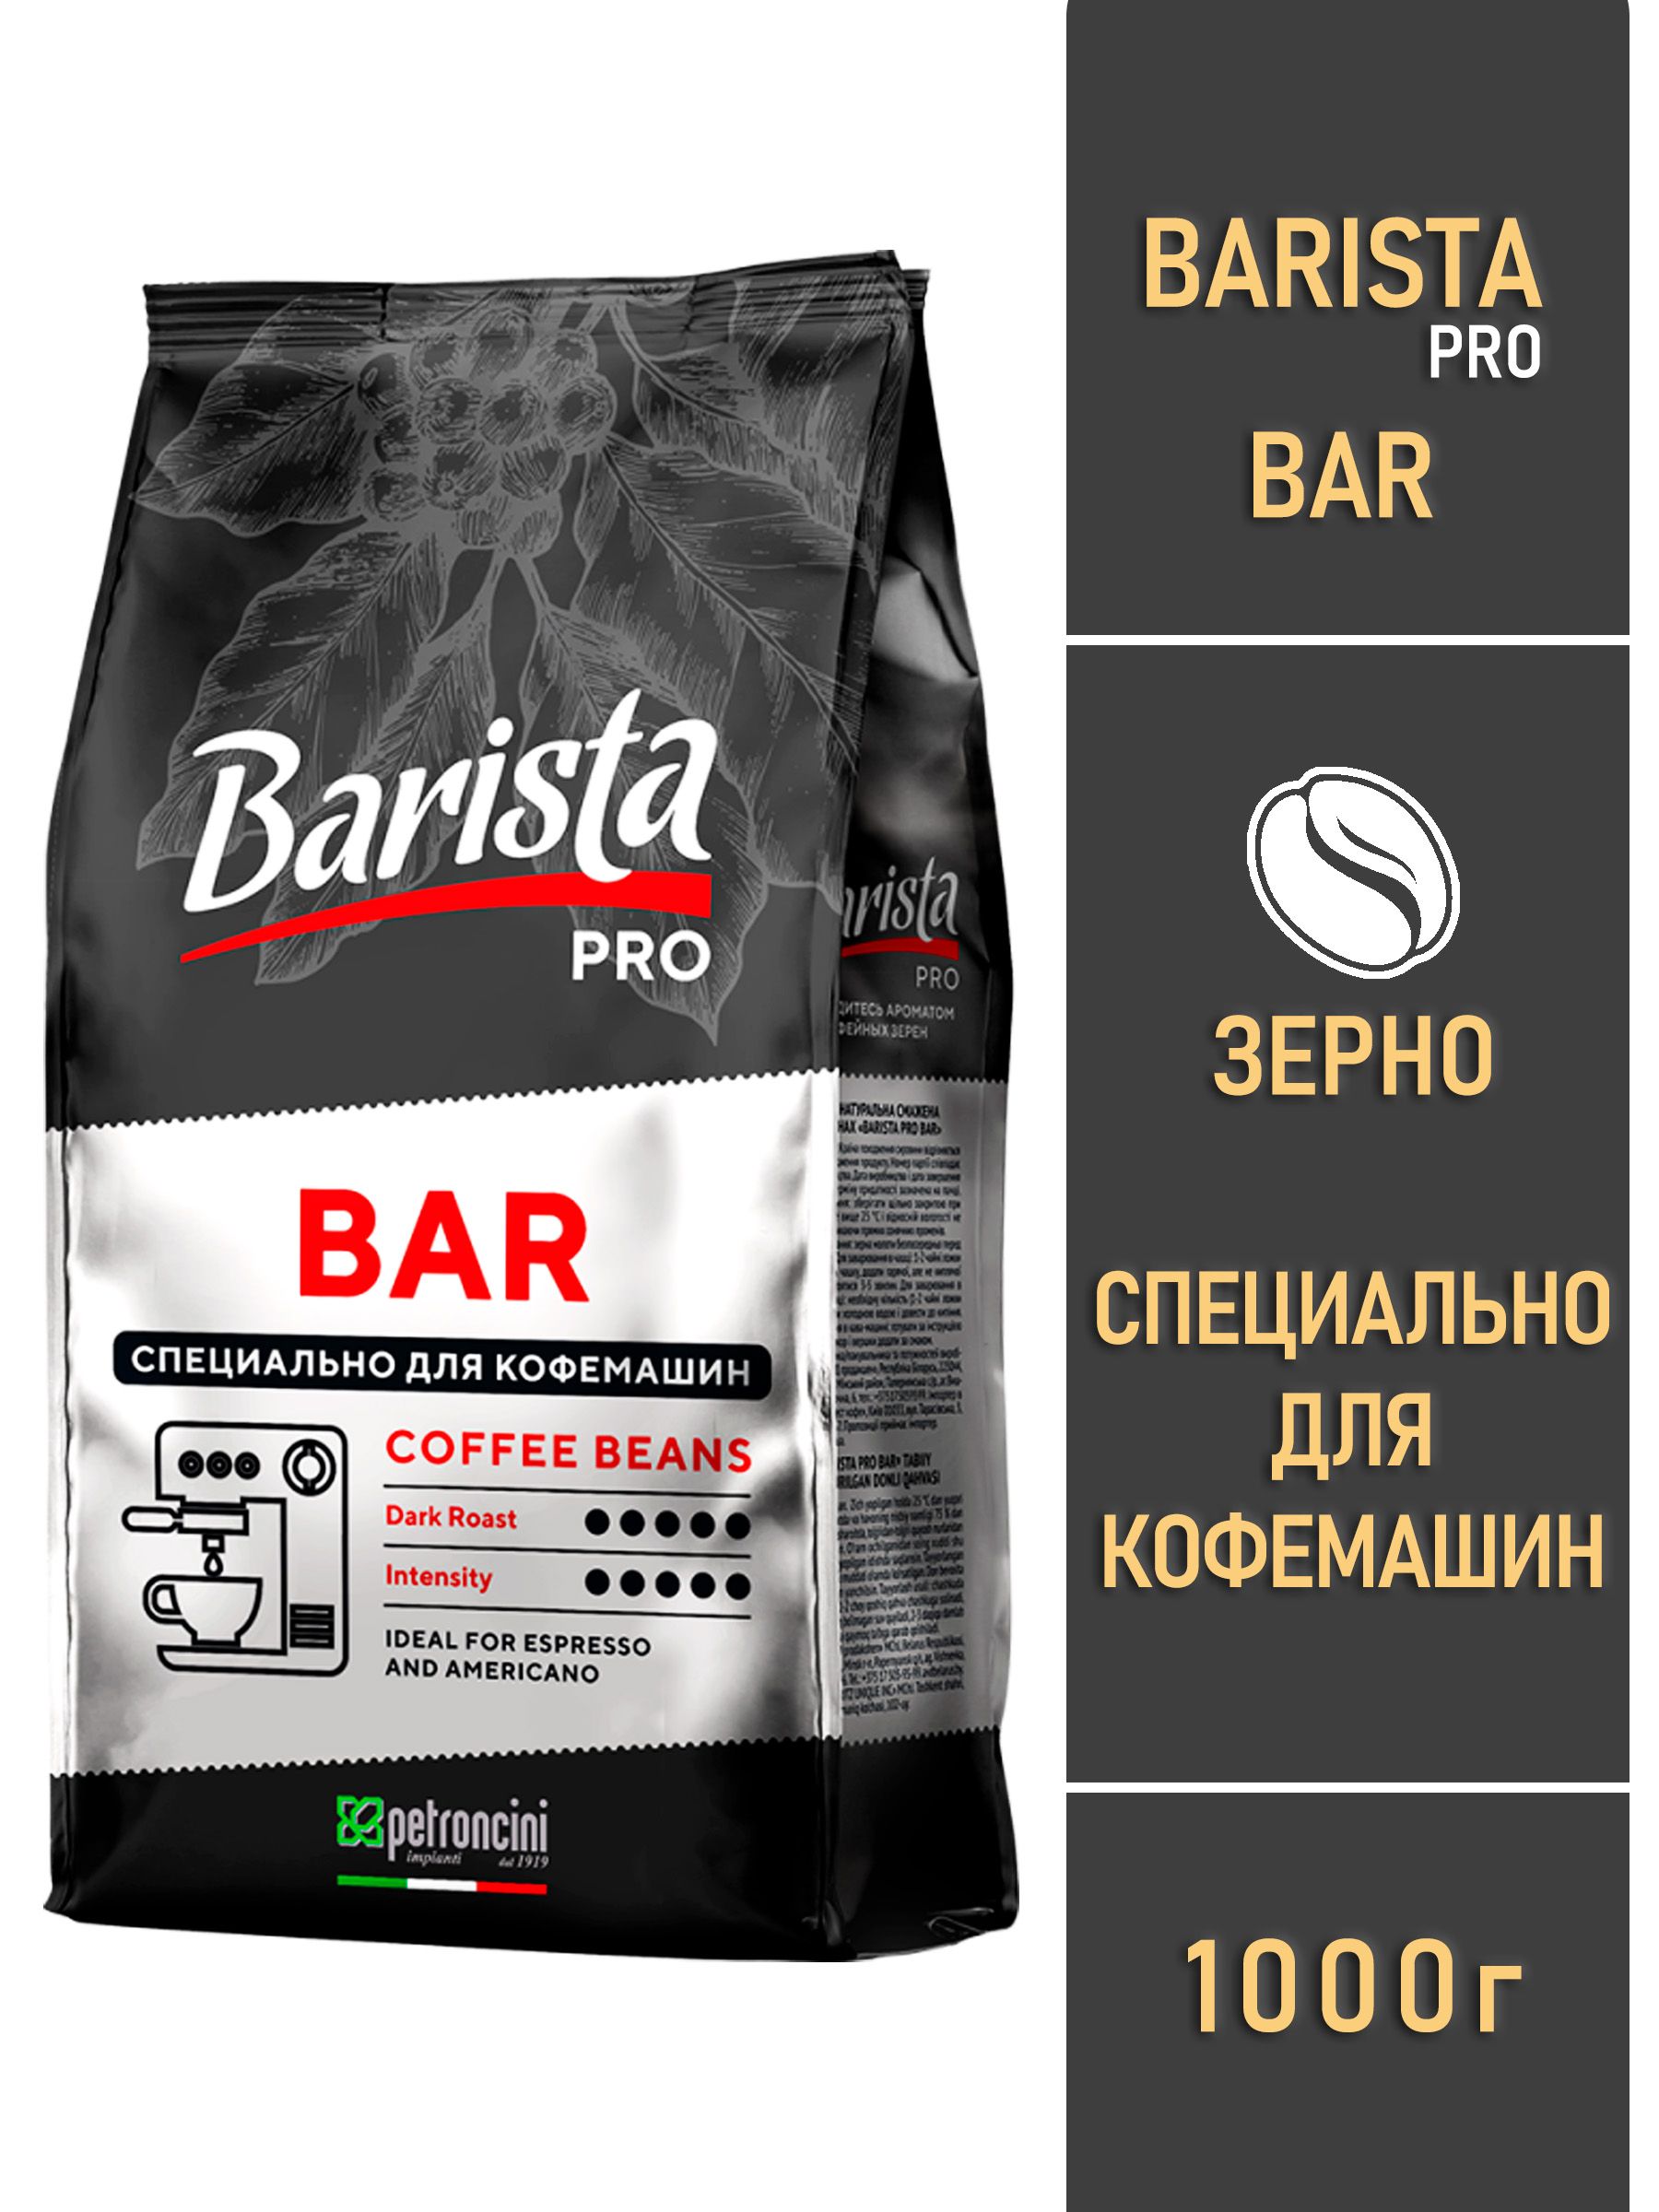 Бариста в зернах отзывы. Кофе Barista Pro Bar 1000г. Barista кофе в зернах Pro Bar 1 кг. Комплект кофе в зернах Barista Pro. Barista Pro Nero кофе зерновой.